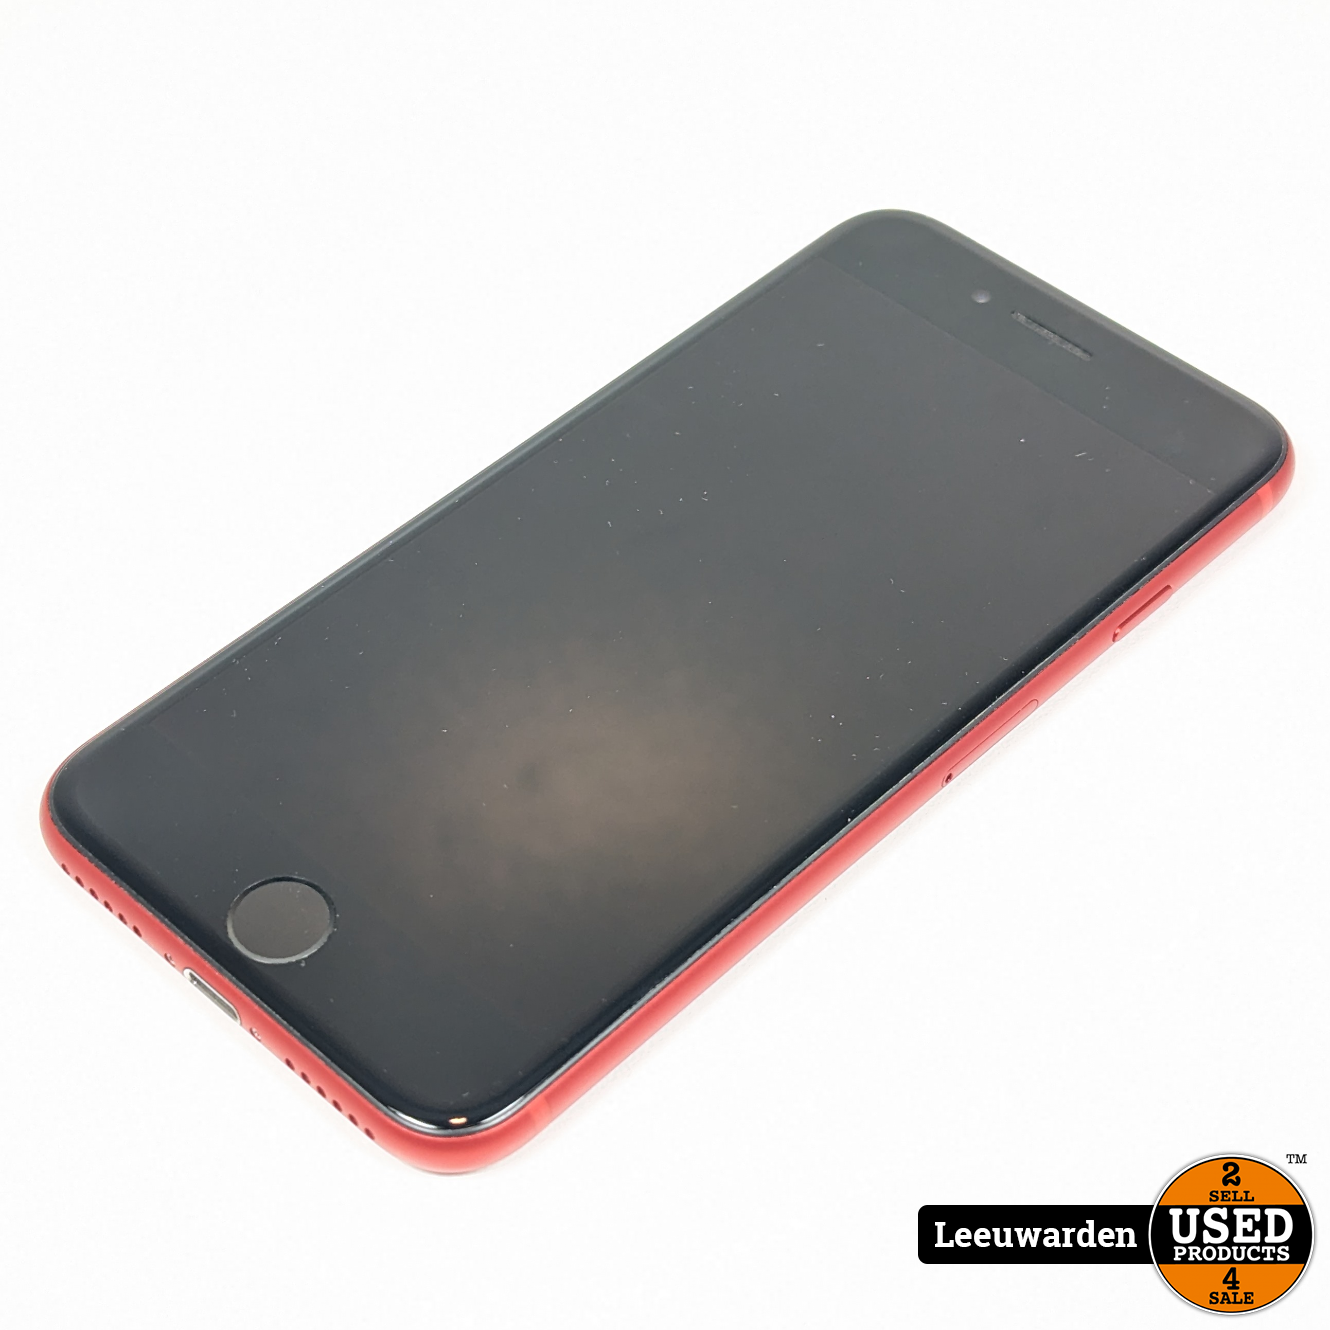 極美品iPhone 8 product red スマートフォン本体